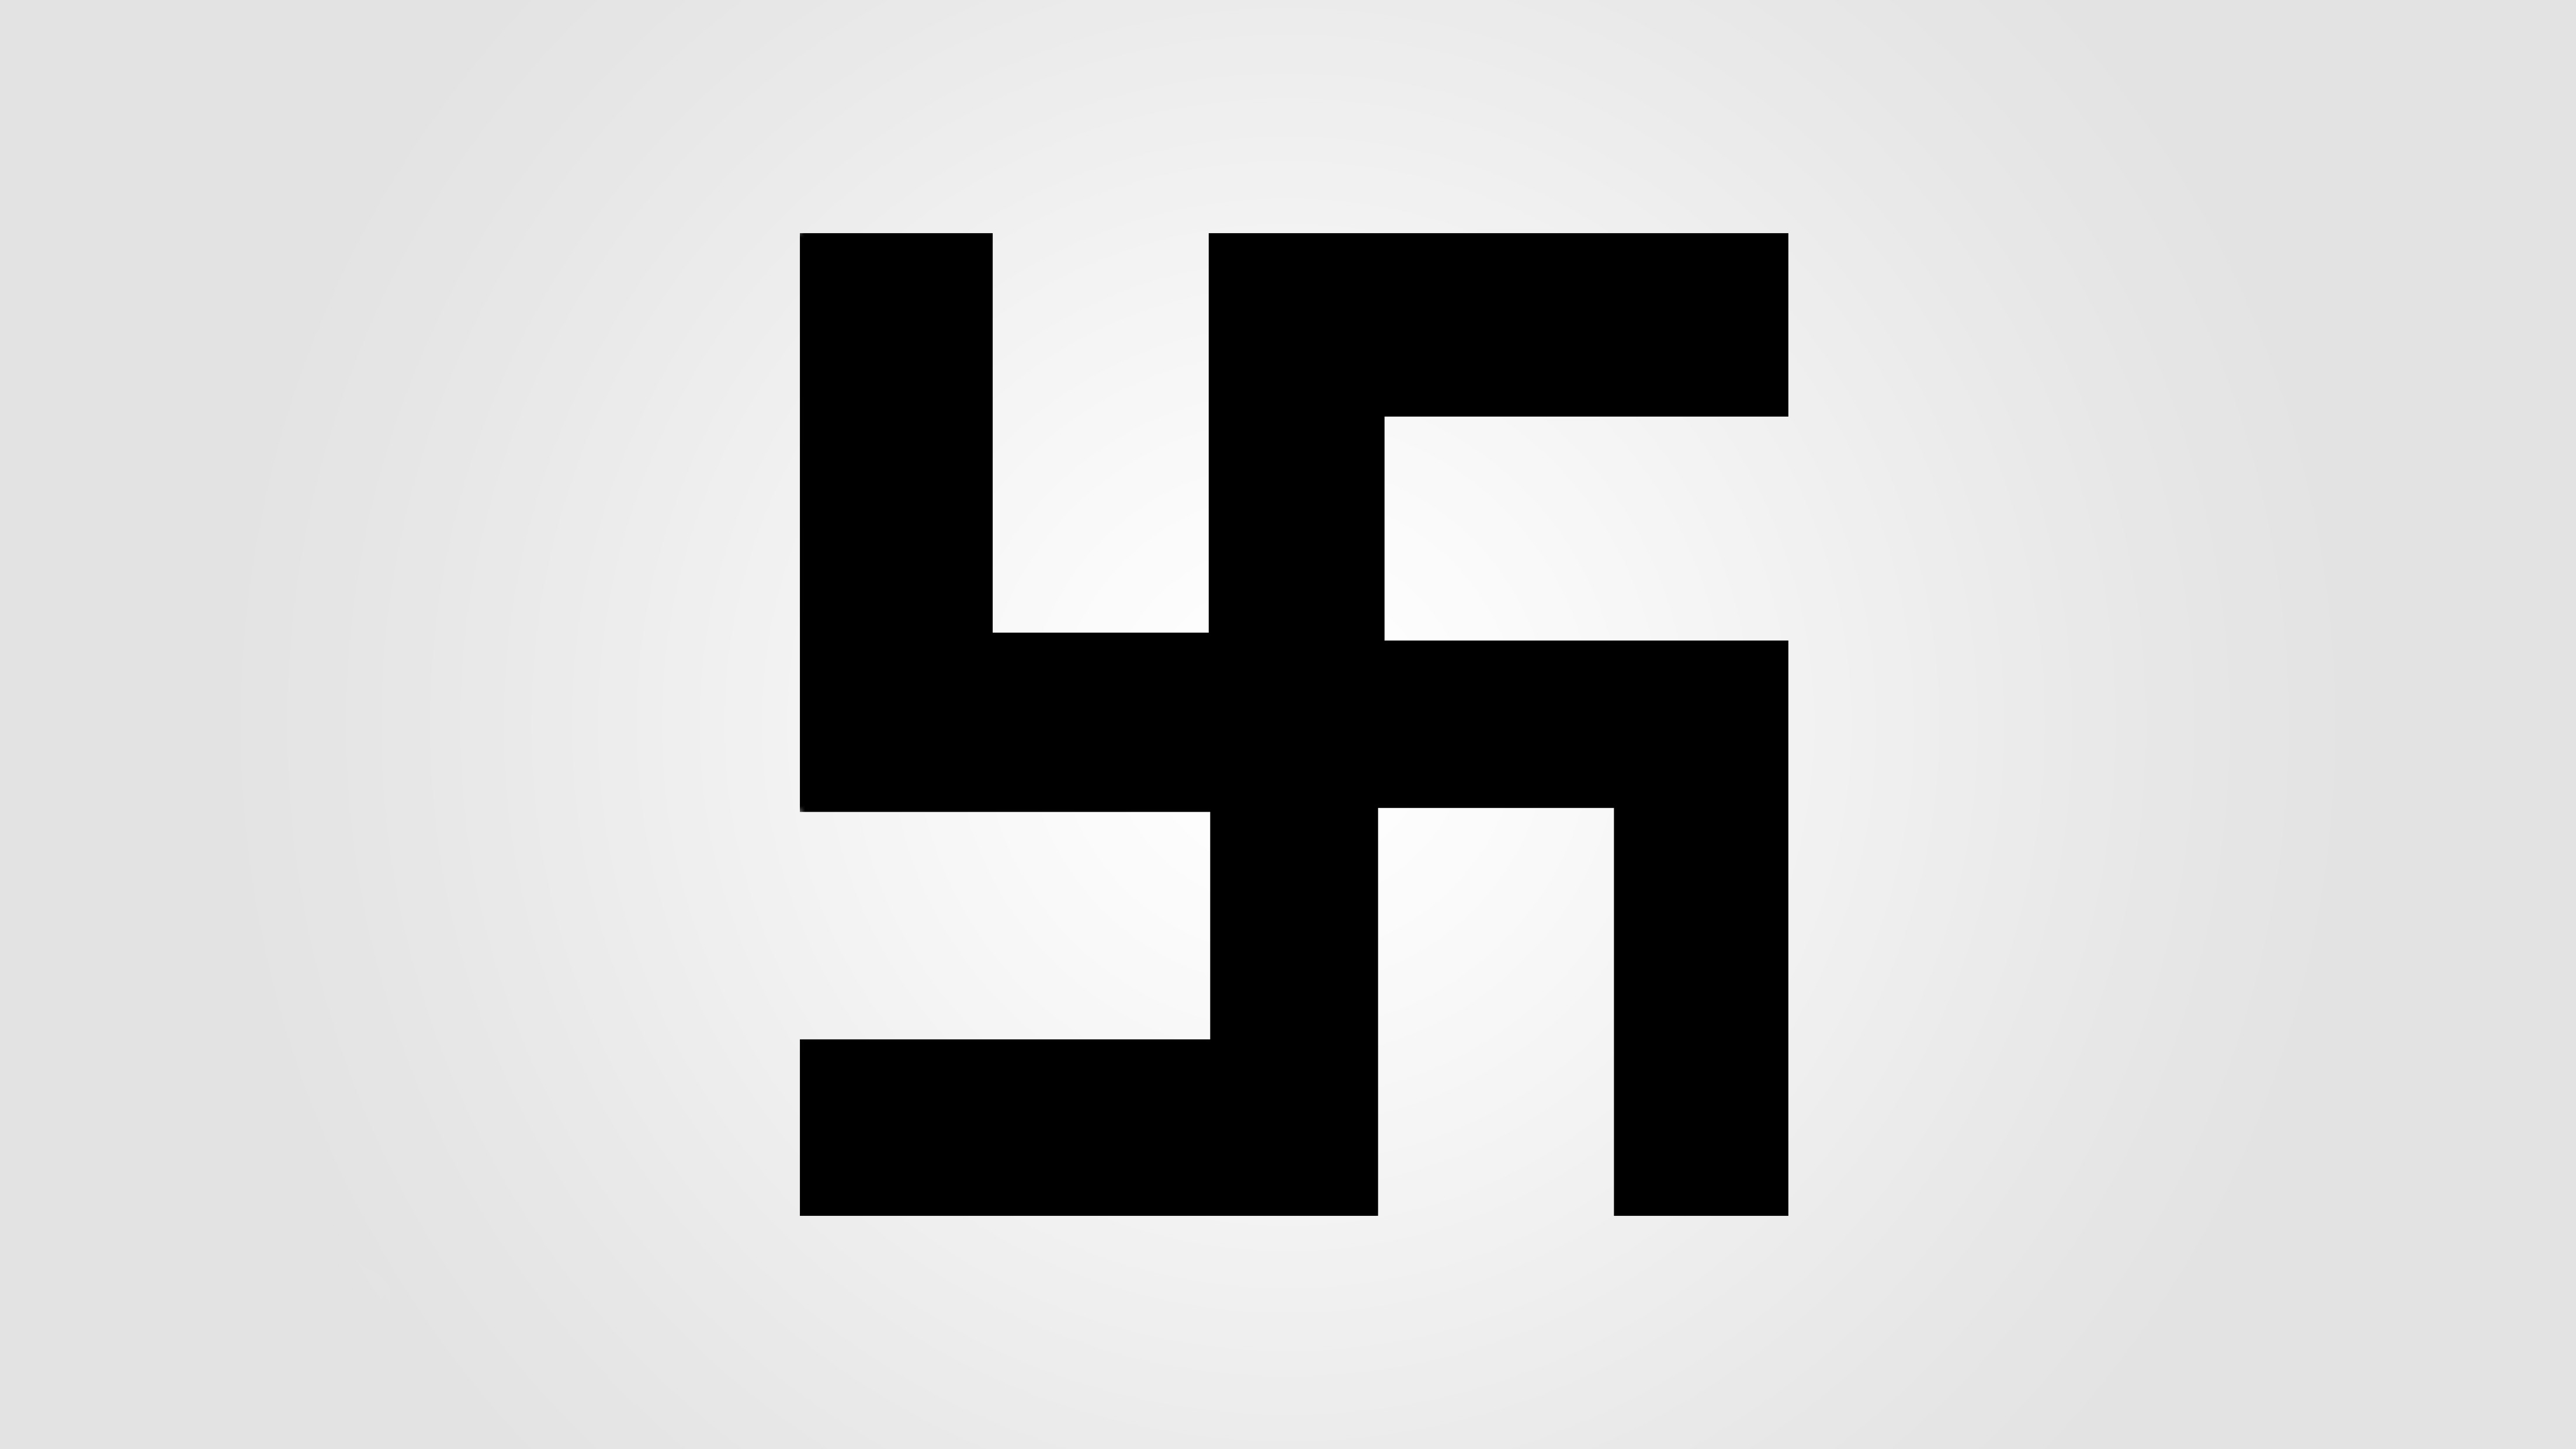 Чч мм сс. Нацистский крест со свастикой.